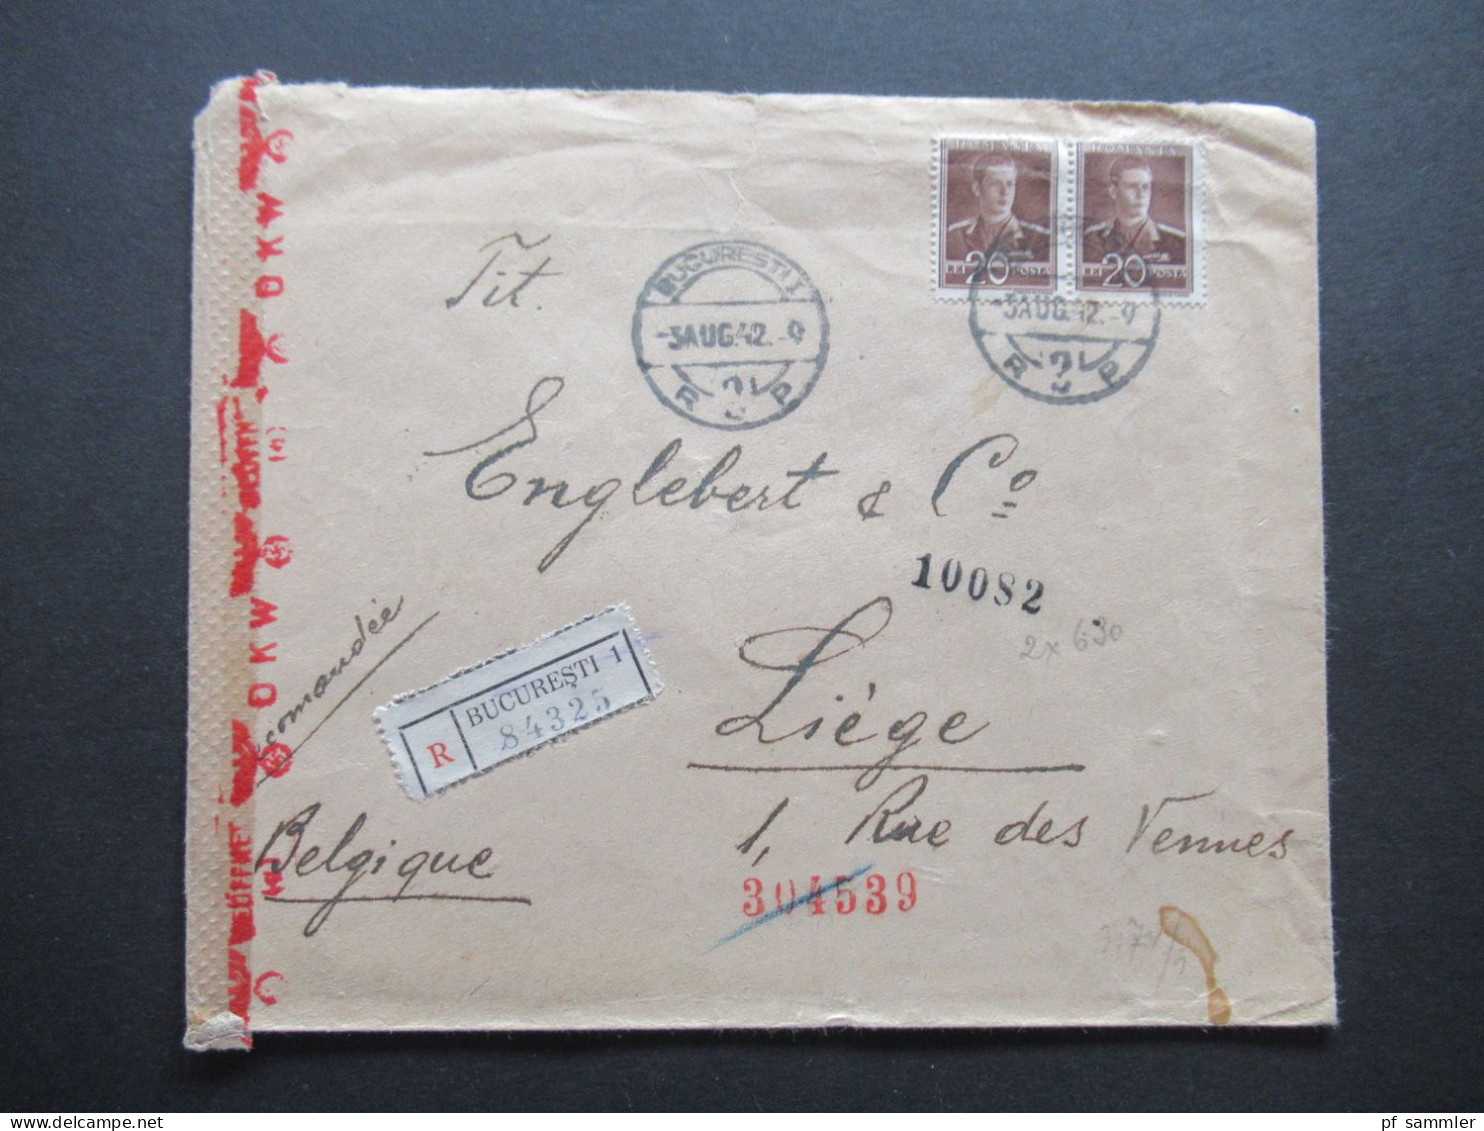 Rumänien 1942 Zensurbeleg Einschreiben Bucuresti - Liege Belgien Mit OKW Zensur Und Weiteren Zensurstempeln - World War 2 Letters